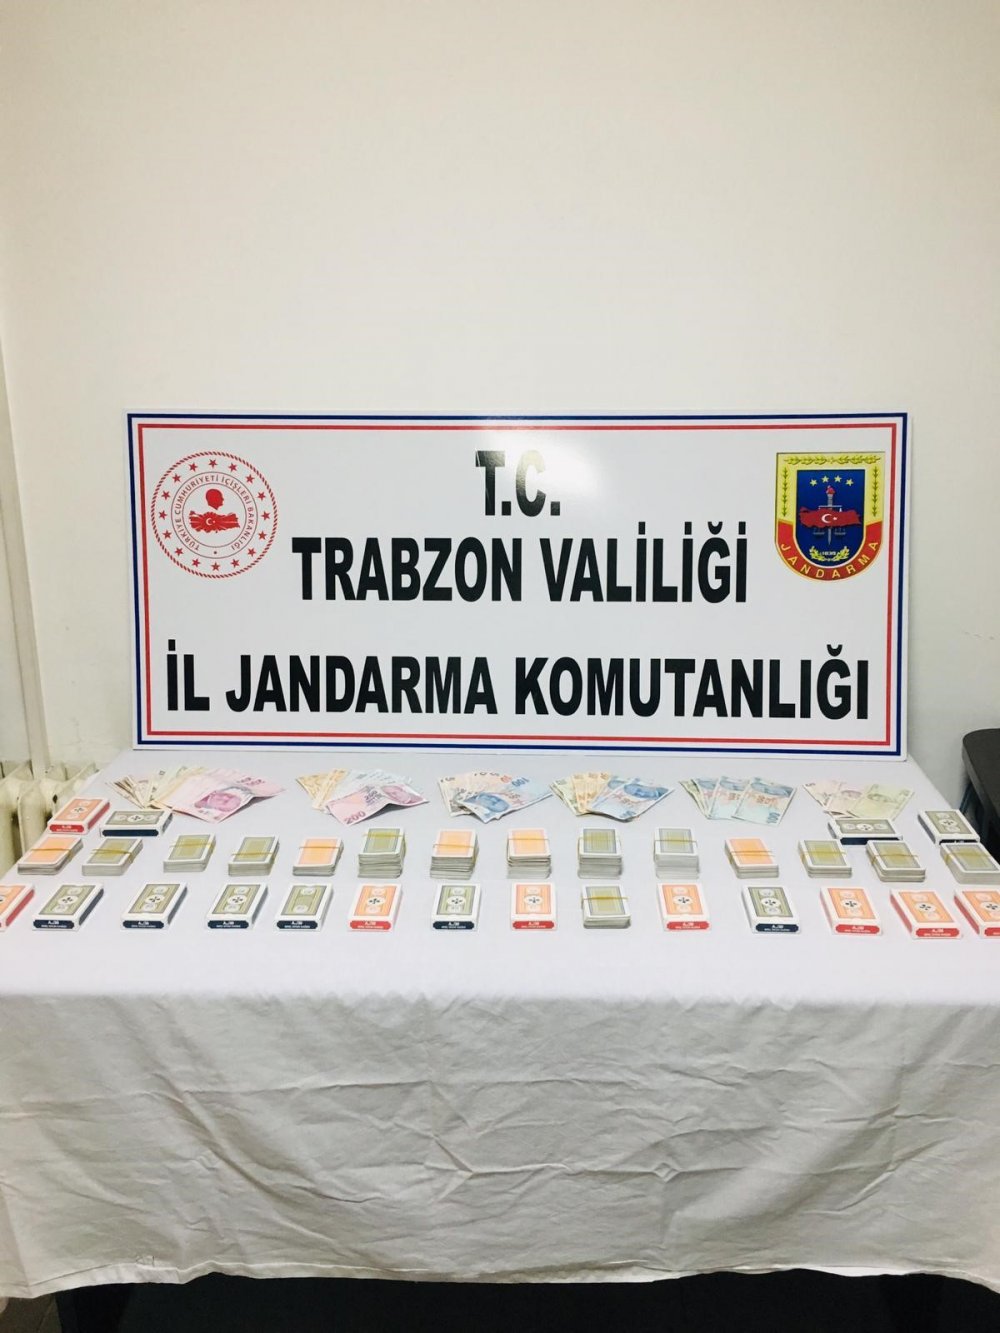 Trabzon’da kumar baskını! Hem kumardan hem sosyal mesafeden ceza yediler